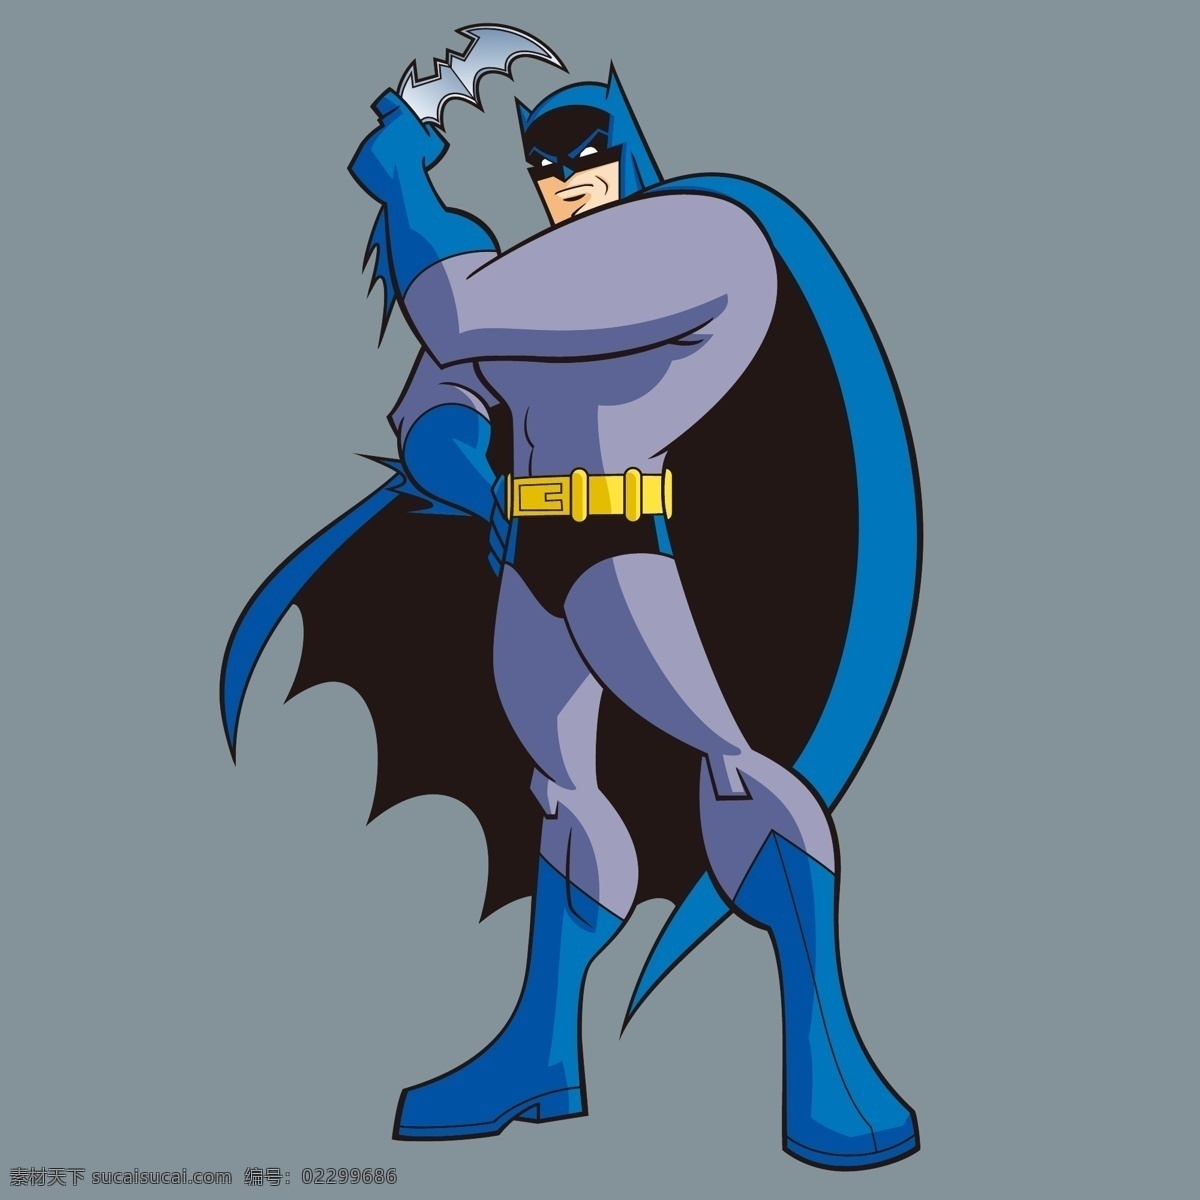 印花 矢量图 t恤图案 蝙蝠侠 服装图案 卡通形象 印花矢量图 热门动画 面料图库 服装设计 图案花型